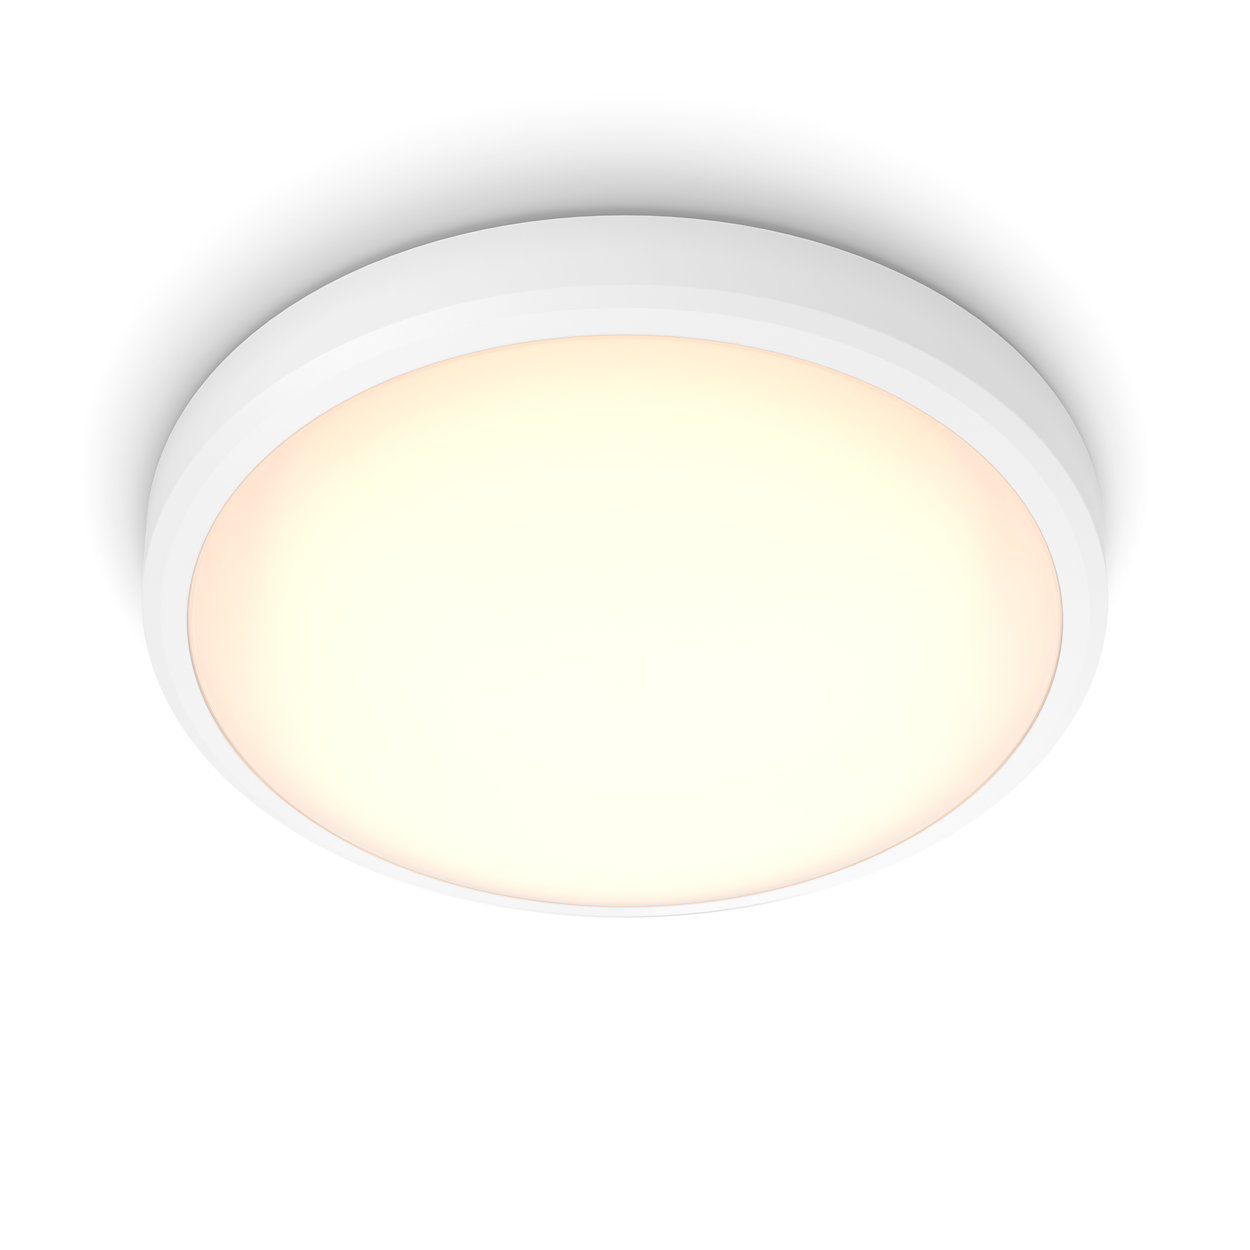 Komfortable LED-Beleuchtung, die Ihre Augen schont